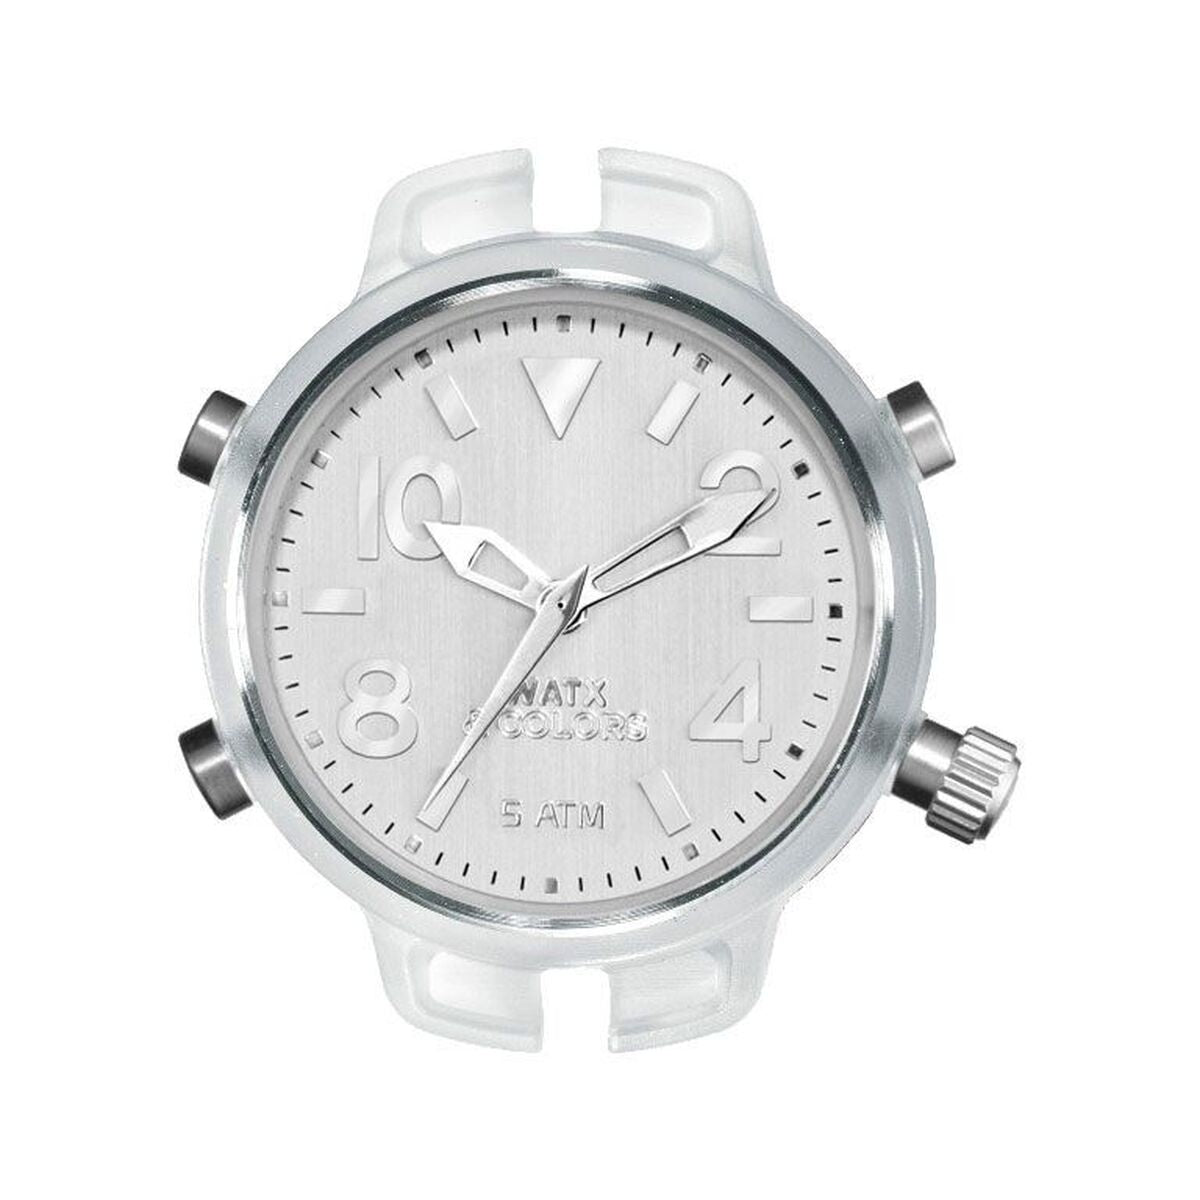 Horloge Dames Watx & Colors RWA3501